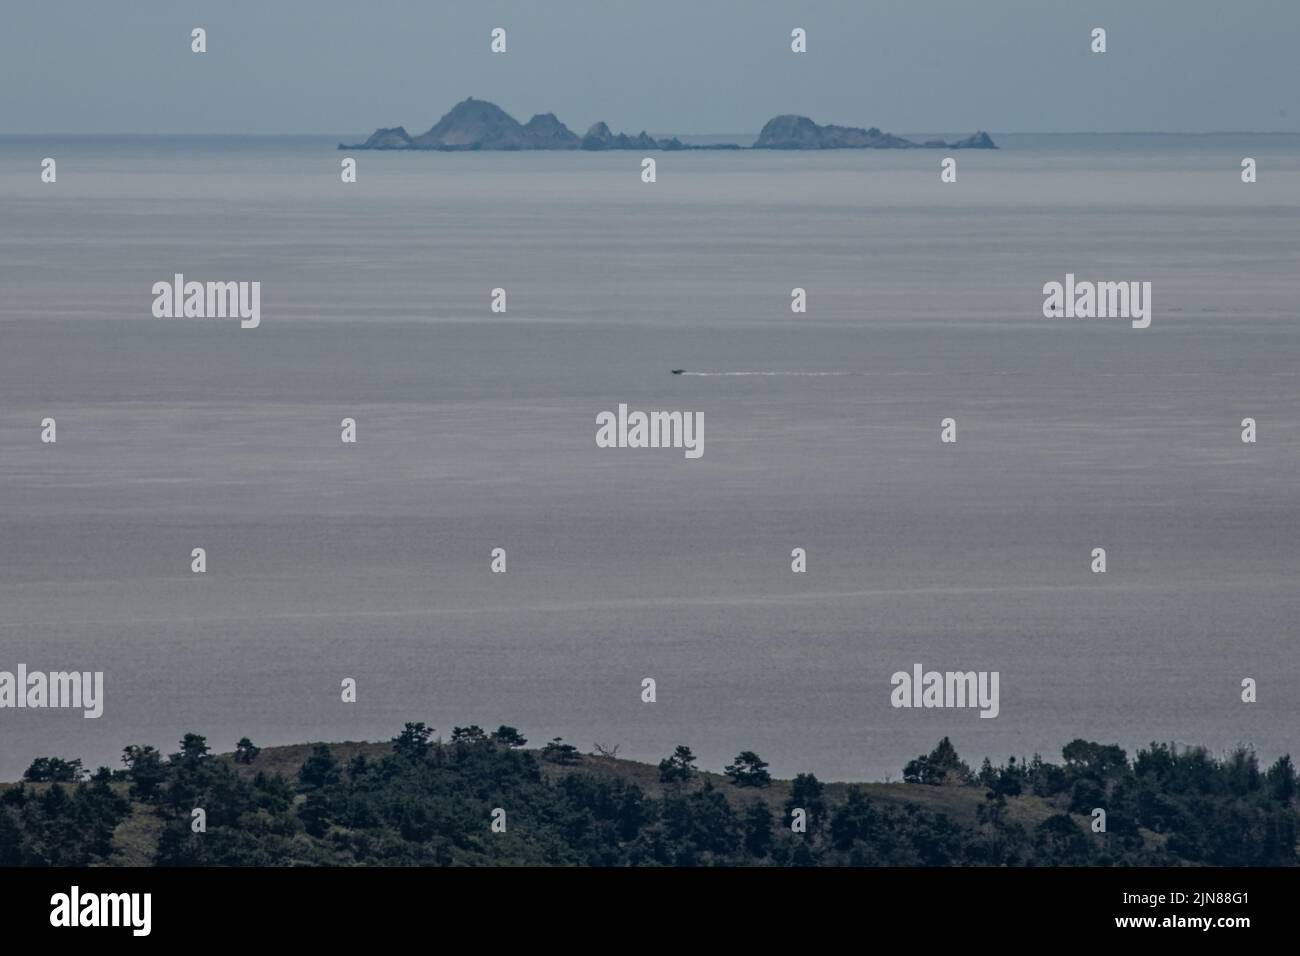 Las islas Farallón o Farallones en la distancia en el océano Pacífico visto desde el continente en un día claro en el condado de Marin, California. Foto de stock